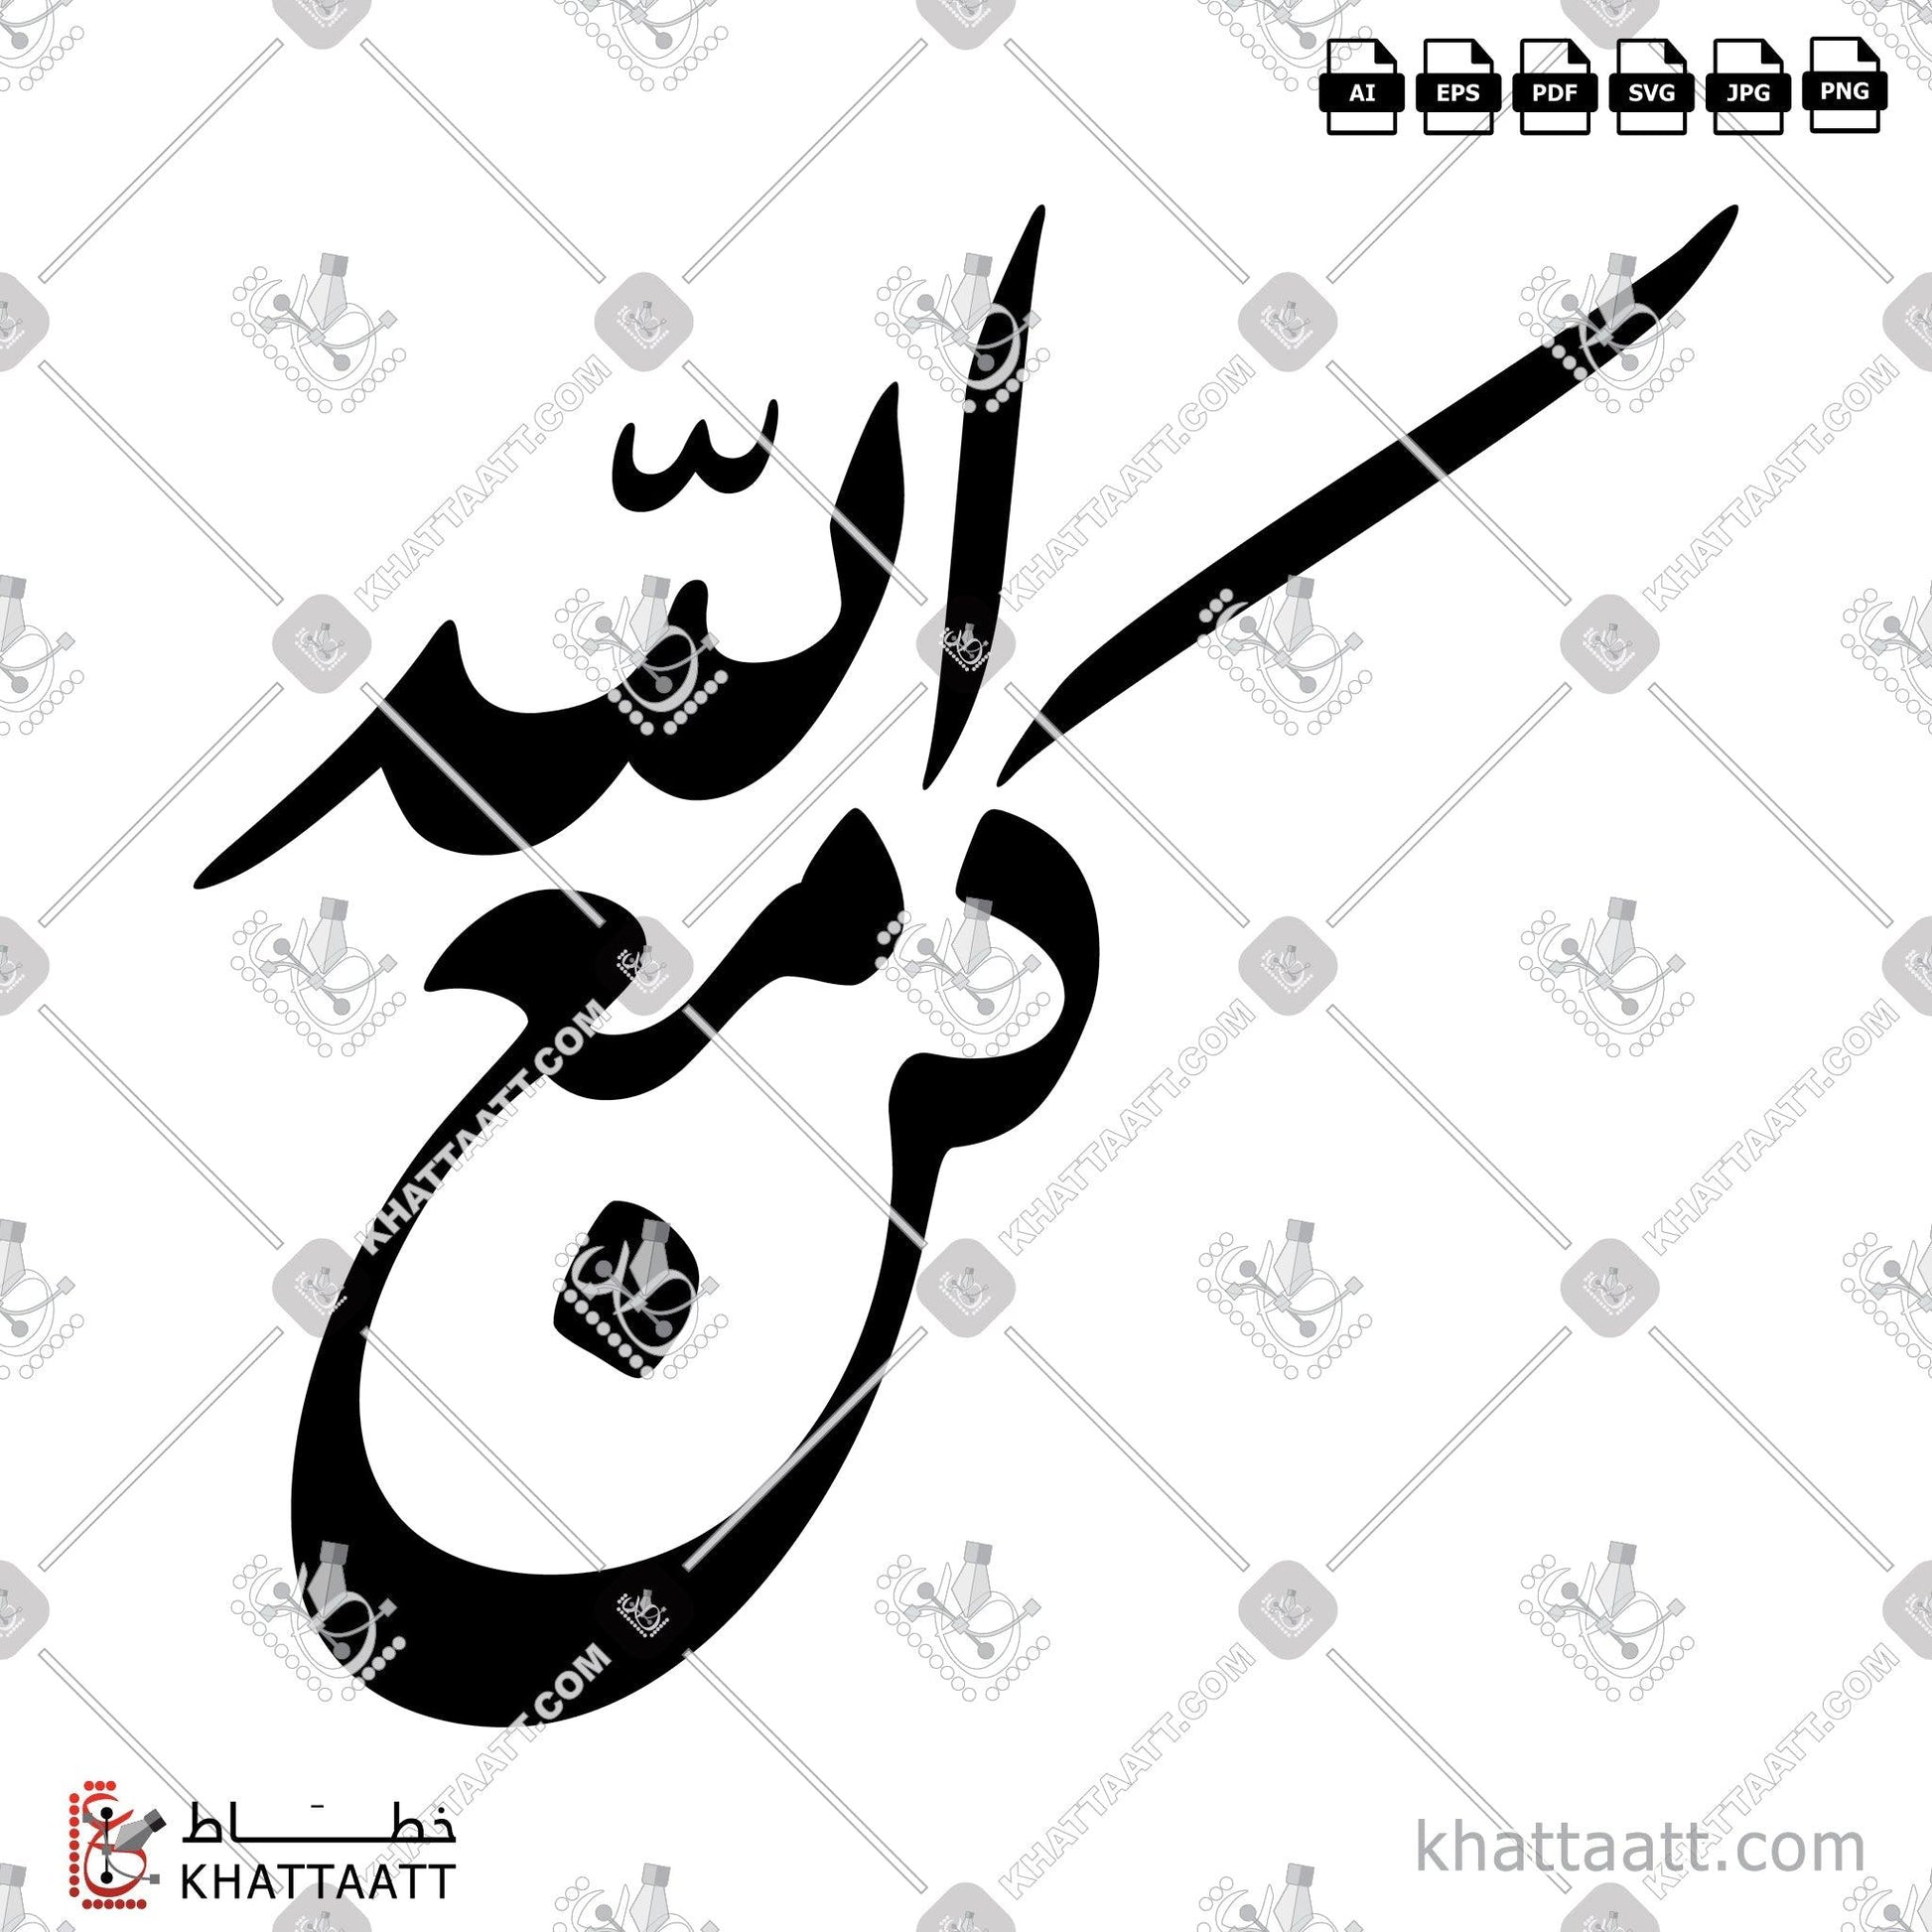 Allah, Arabic Calligraphy Vector, Farsi Script, الخط العربي, الخط الفارسي, الله, الله جل جلاله, الله عز وجل, كن مع الله KHATTAATT